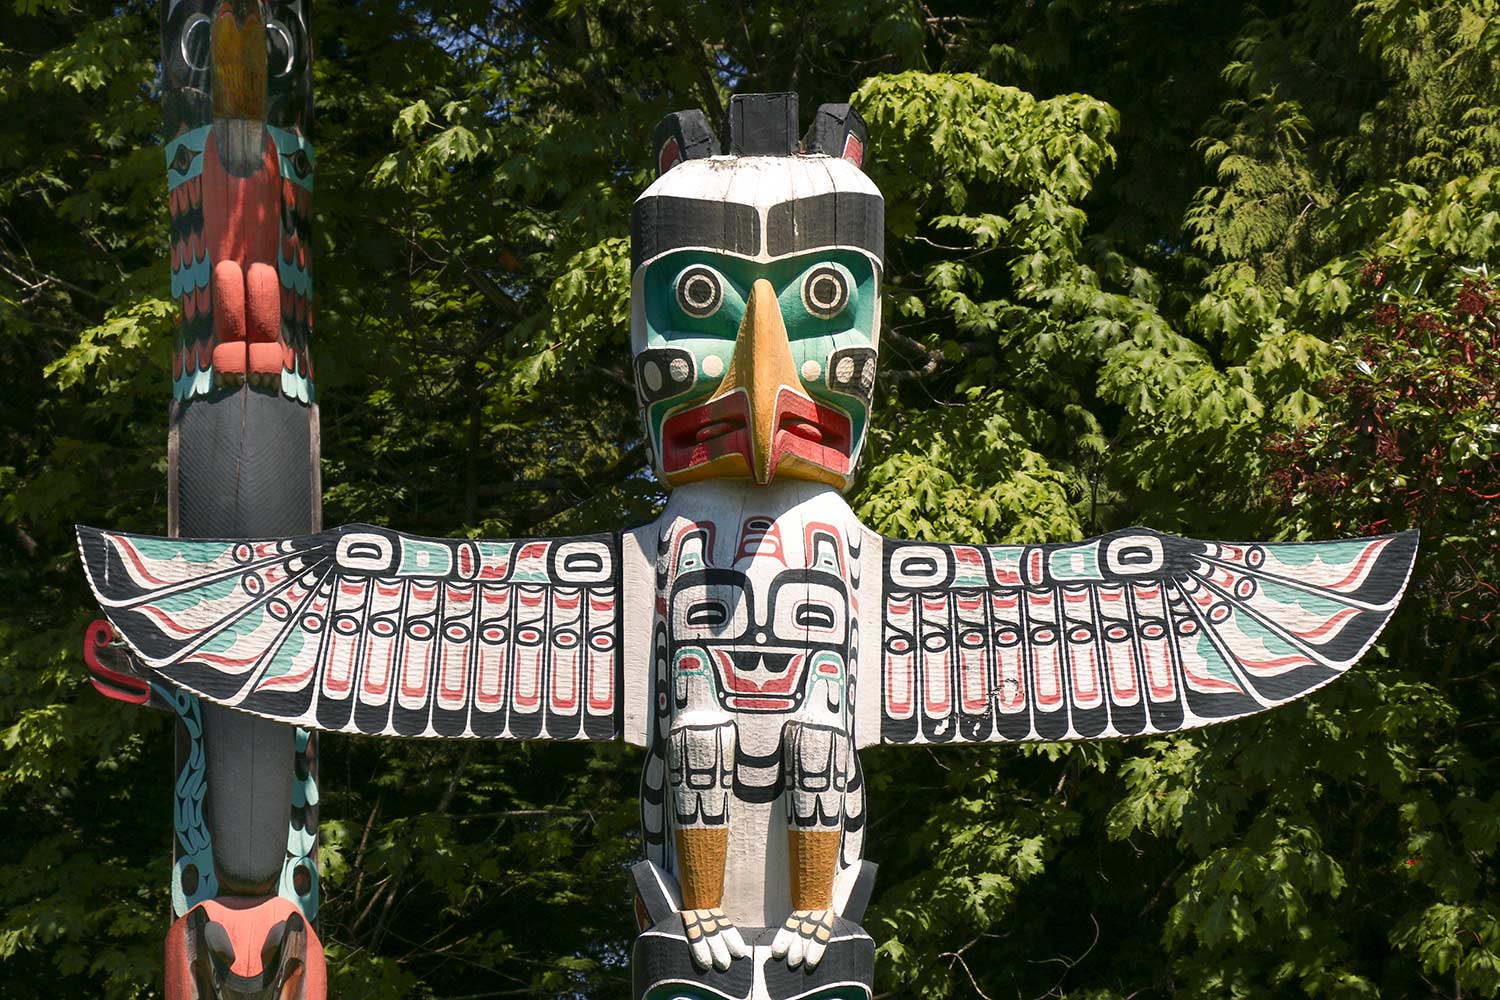 Mat totémique, Parc Stanley, Vancouver, Colombie-Britannique, Canada / Totem, Stanley Park, Vancouver, BC, Canada